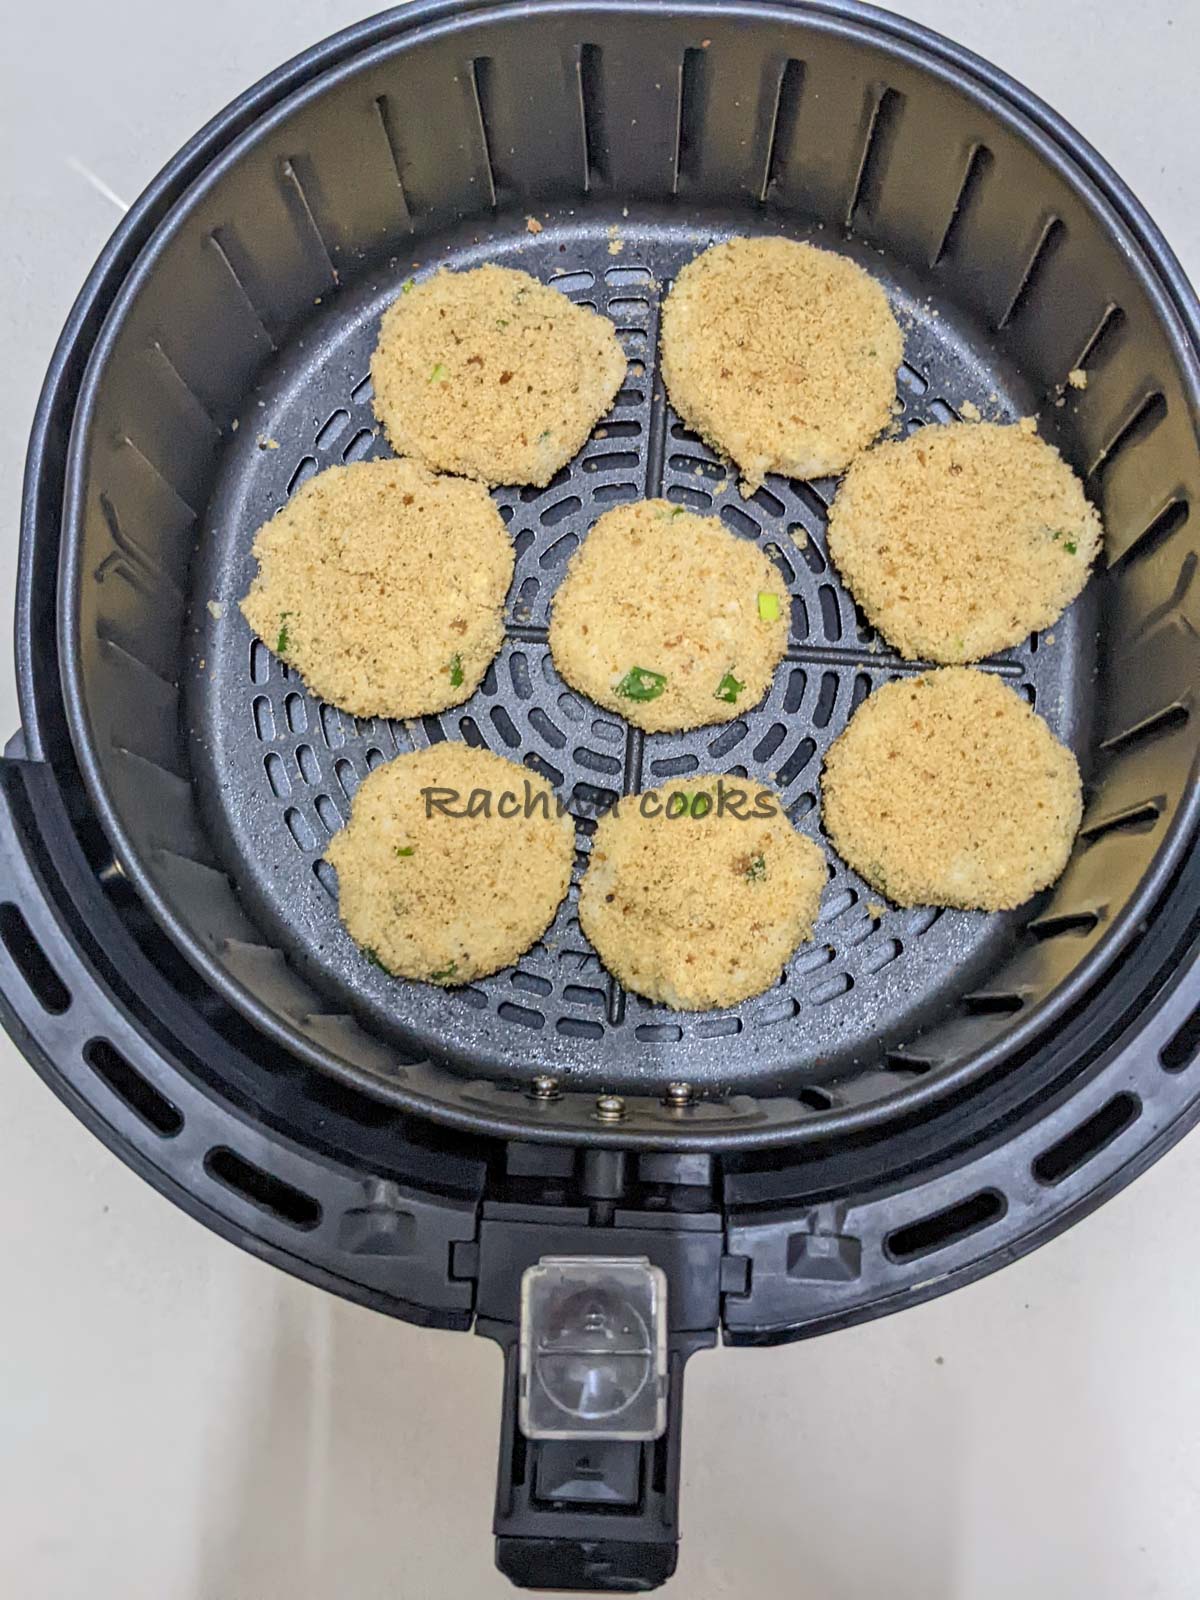 Potato pancakes in air fryer basket.